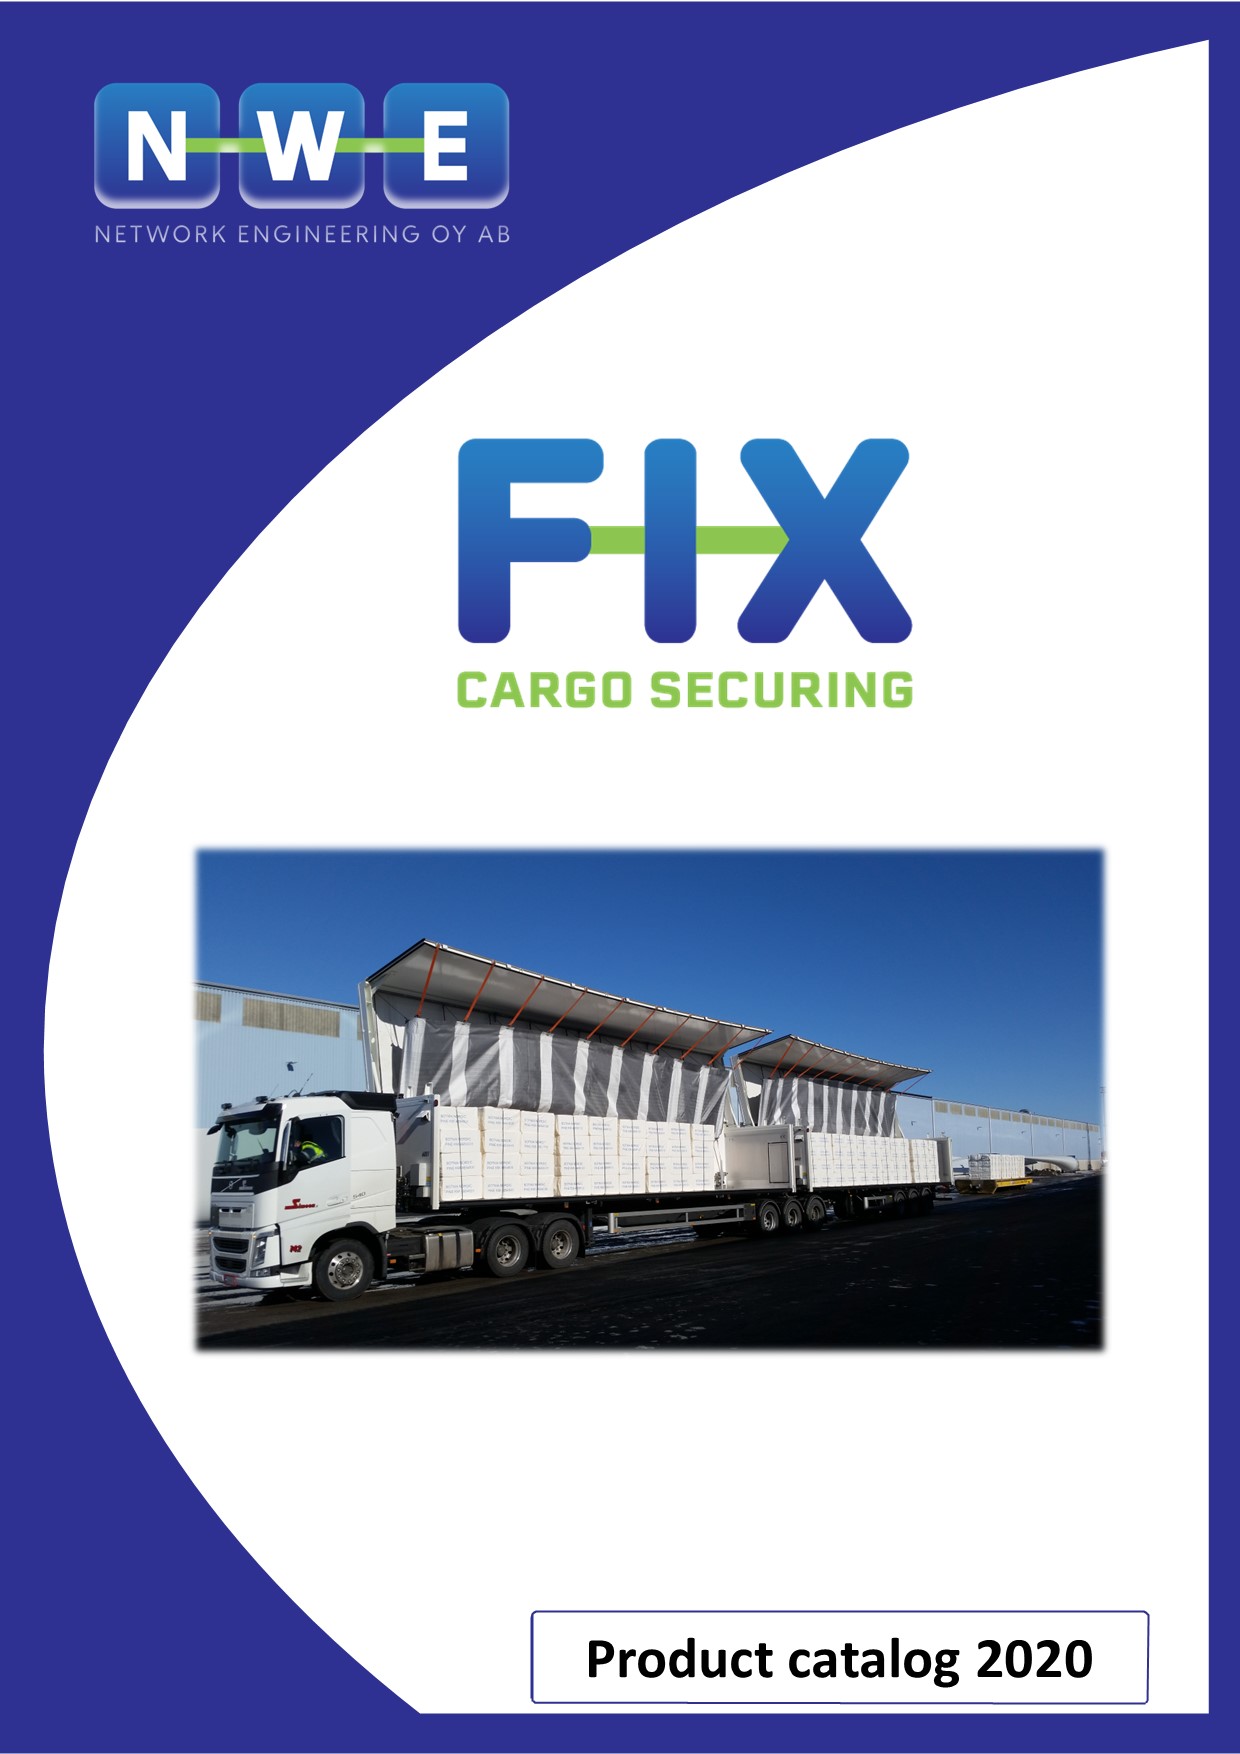 Cargo securing